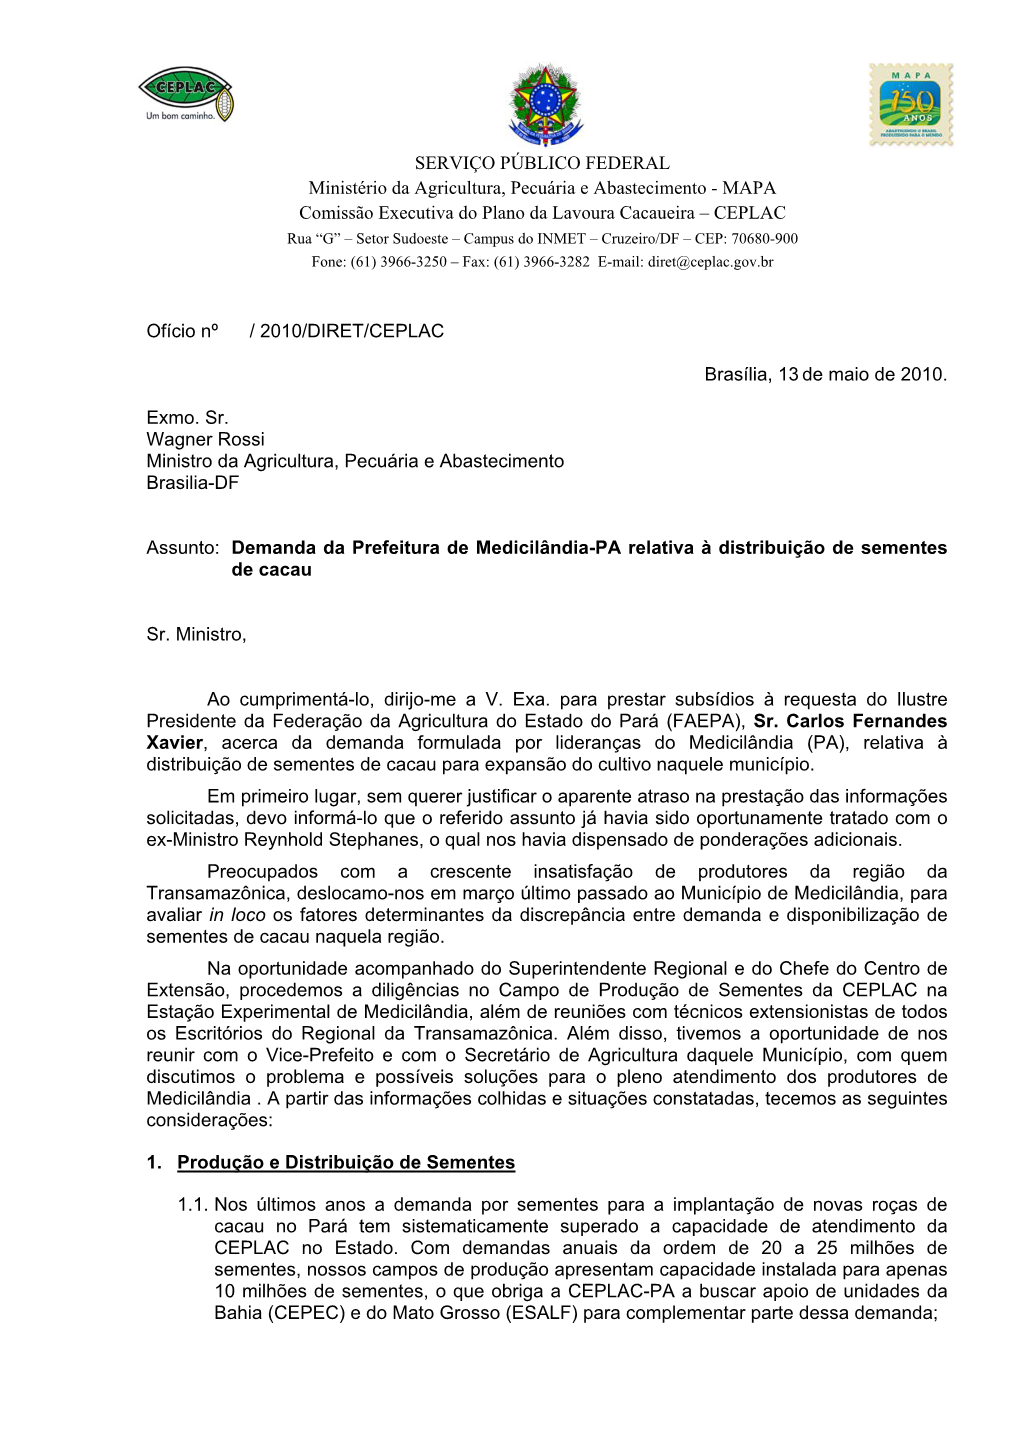 Reivindicação Da Prefeitura De Medicilândia-PA, Referente À